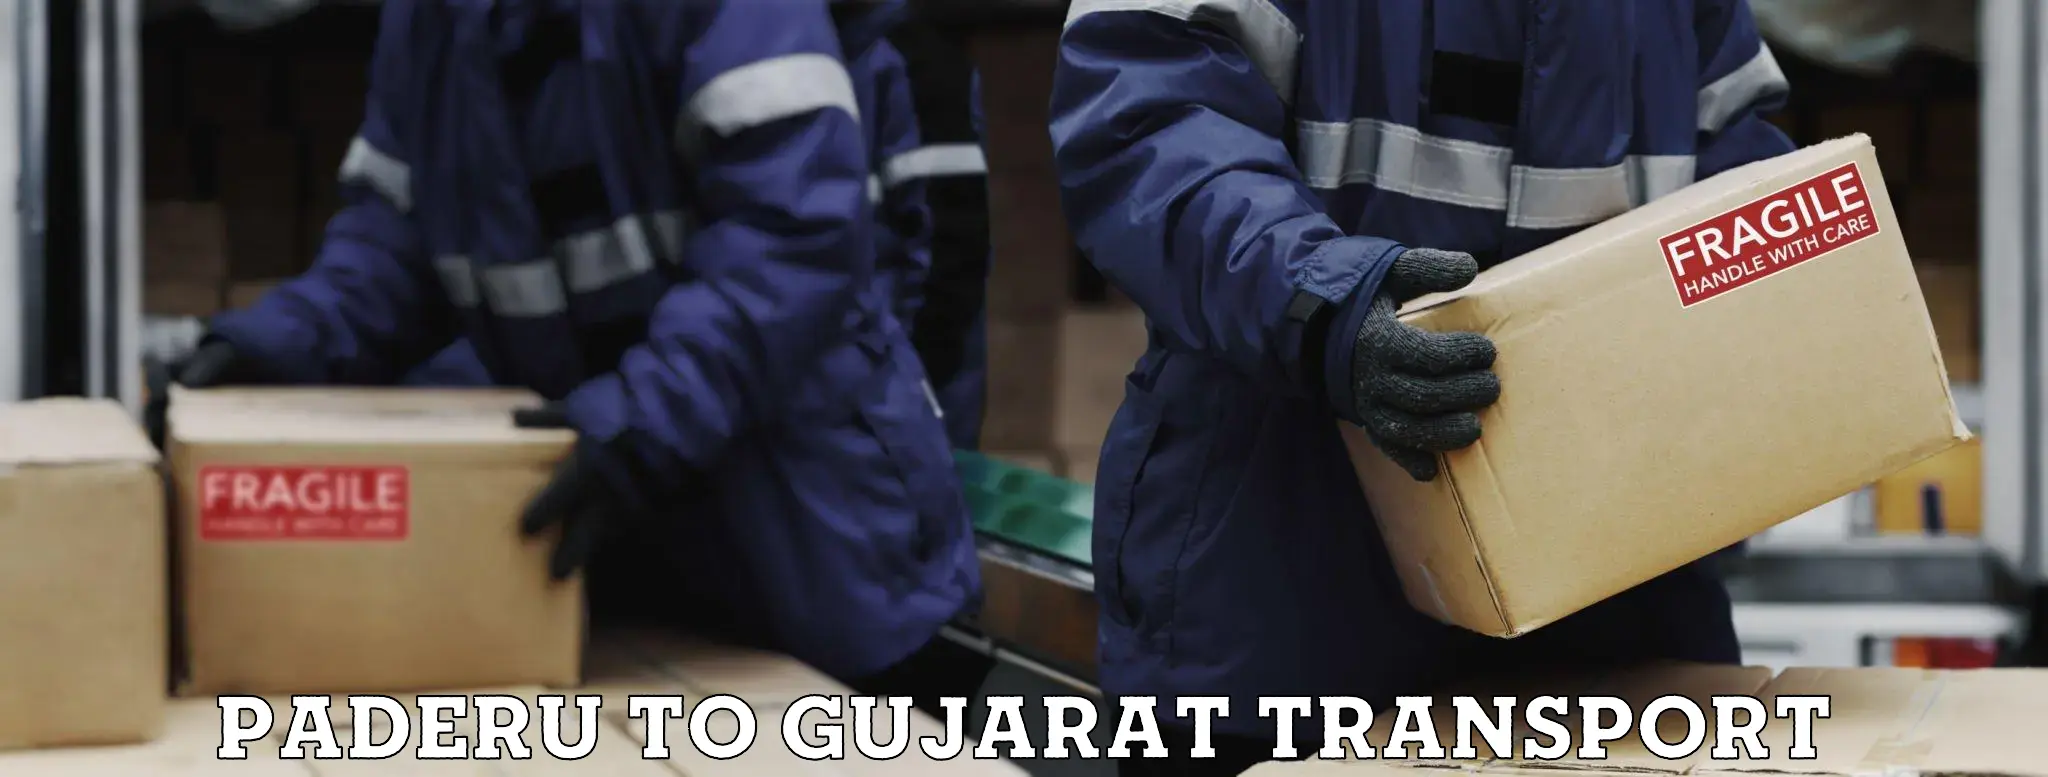 Luggage transport services Paderu to Patan Gujarat